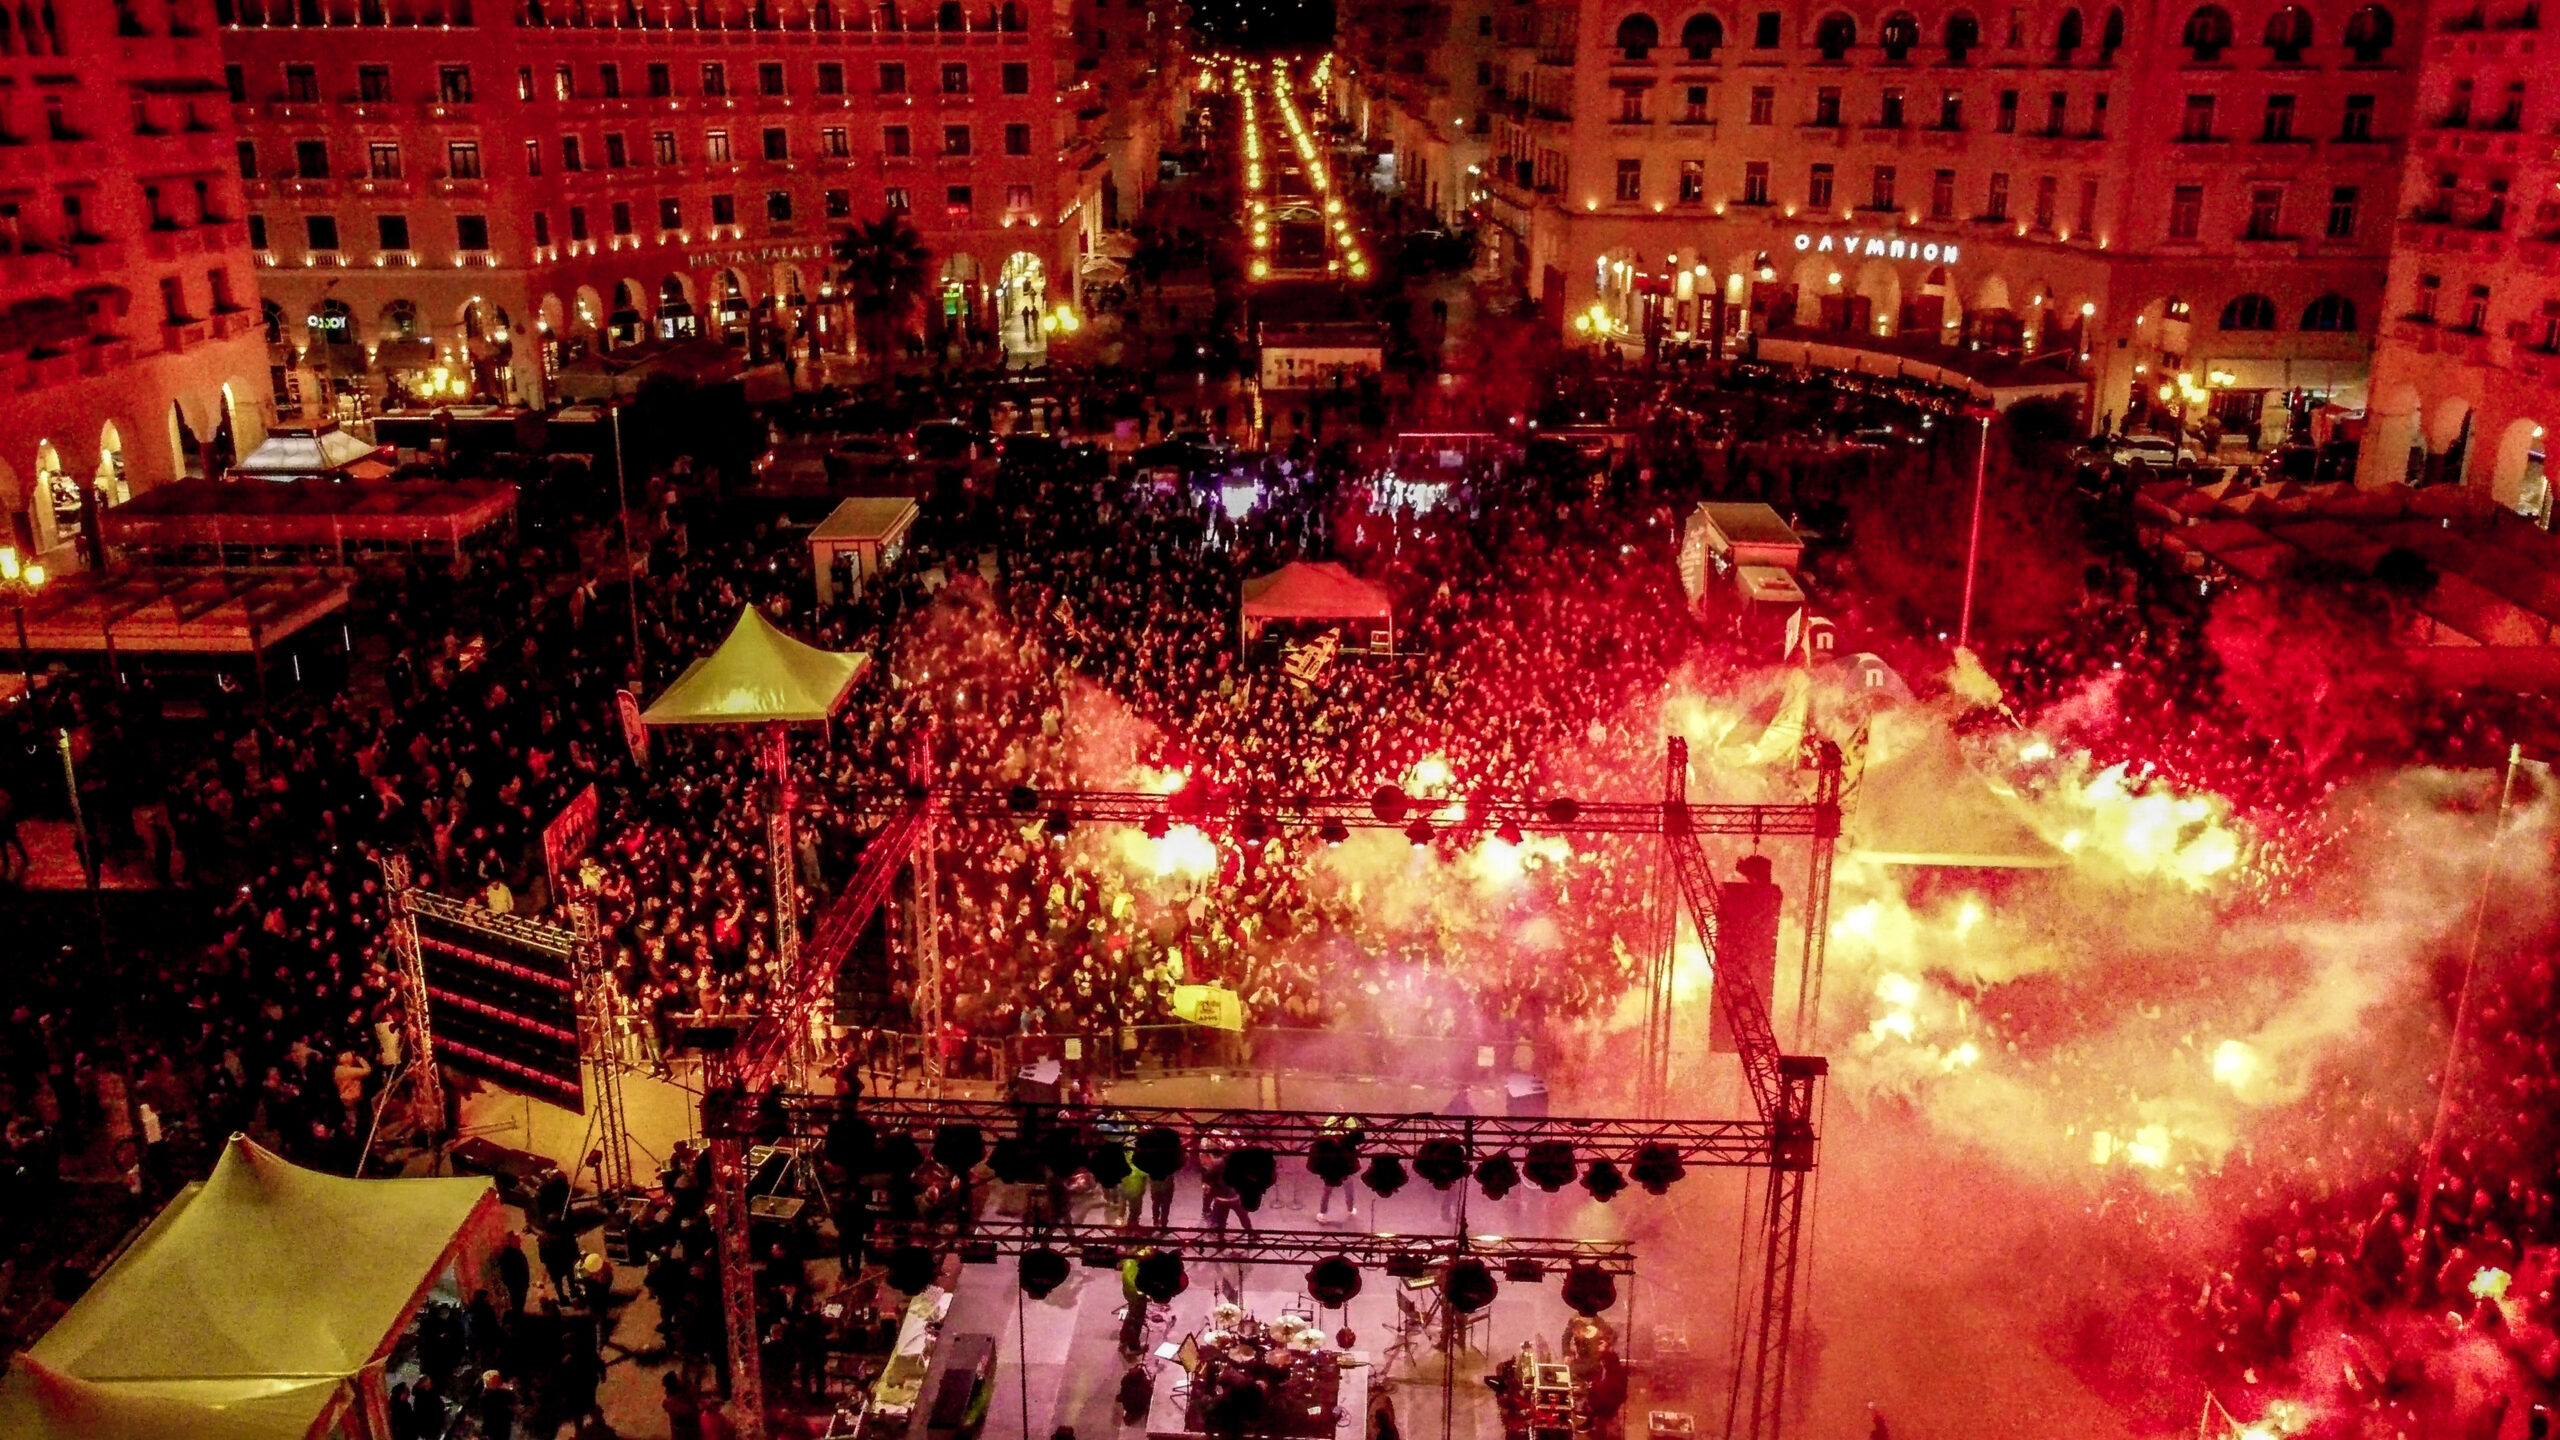 Θεσσαλονίκη: Κορυφώνονται οι εκδηλώσεις για τα 110 χρόνια του Άρη- Πλήθος κόσμου στην πλατεία Αριστοτέλους